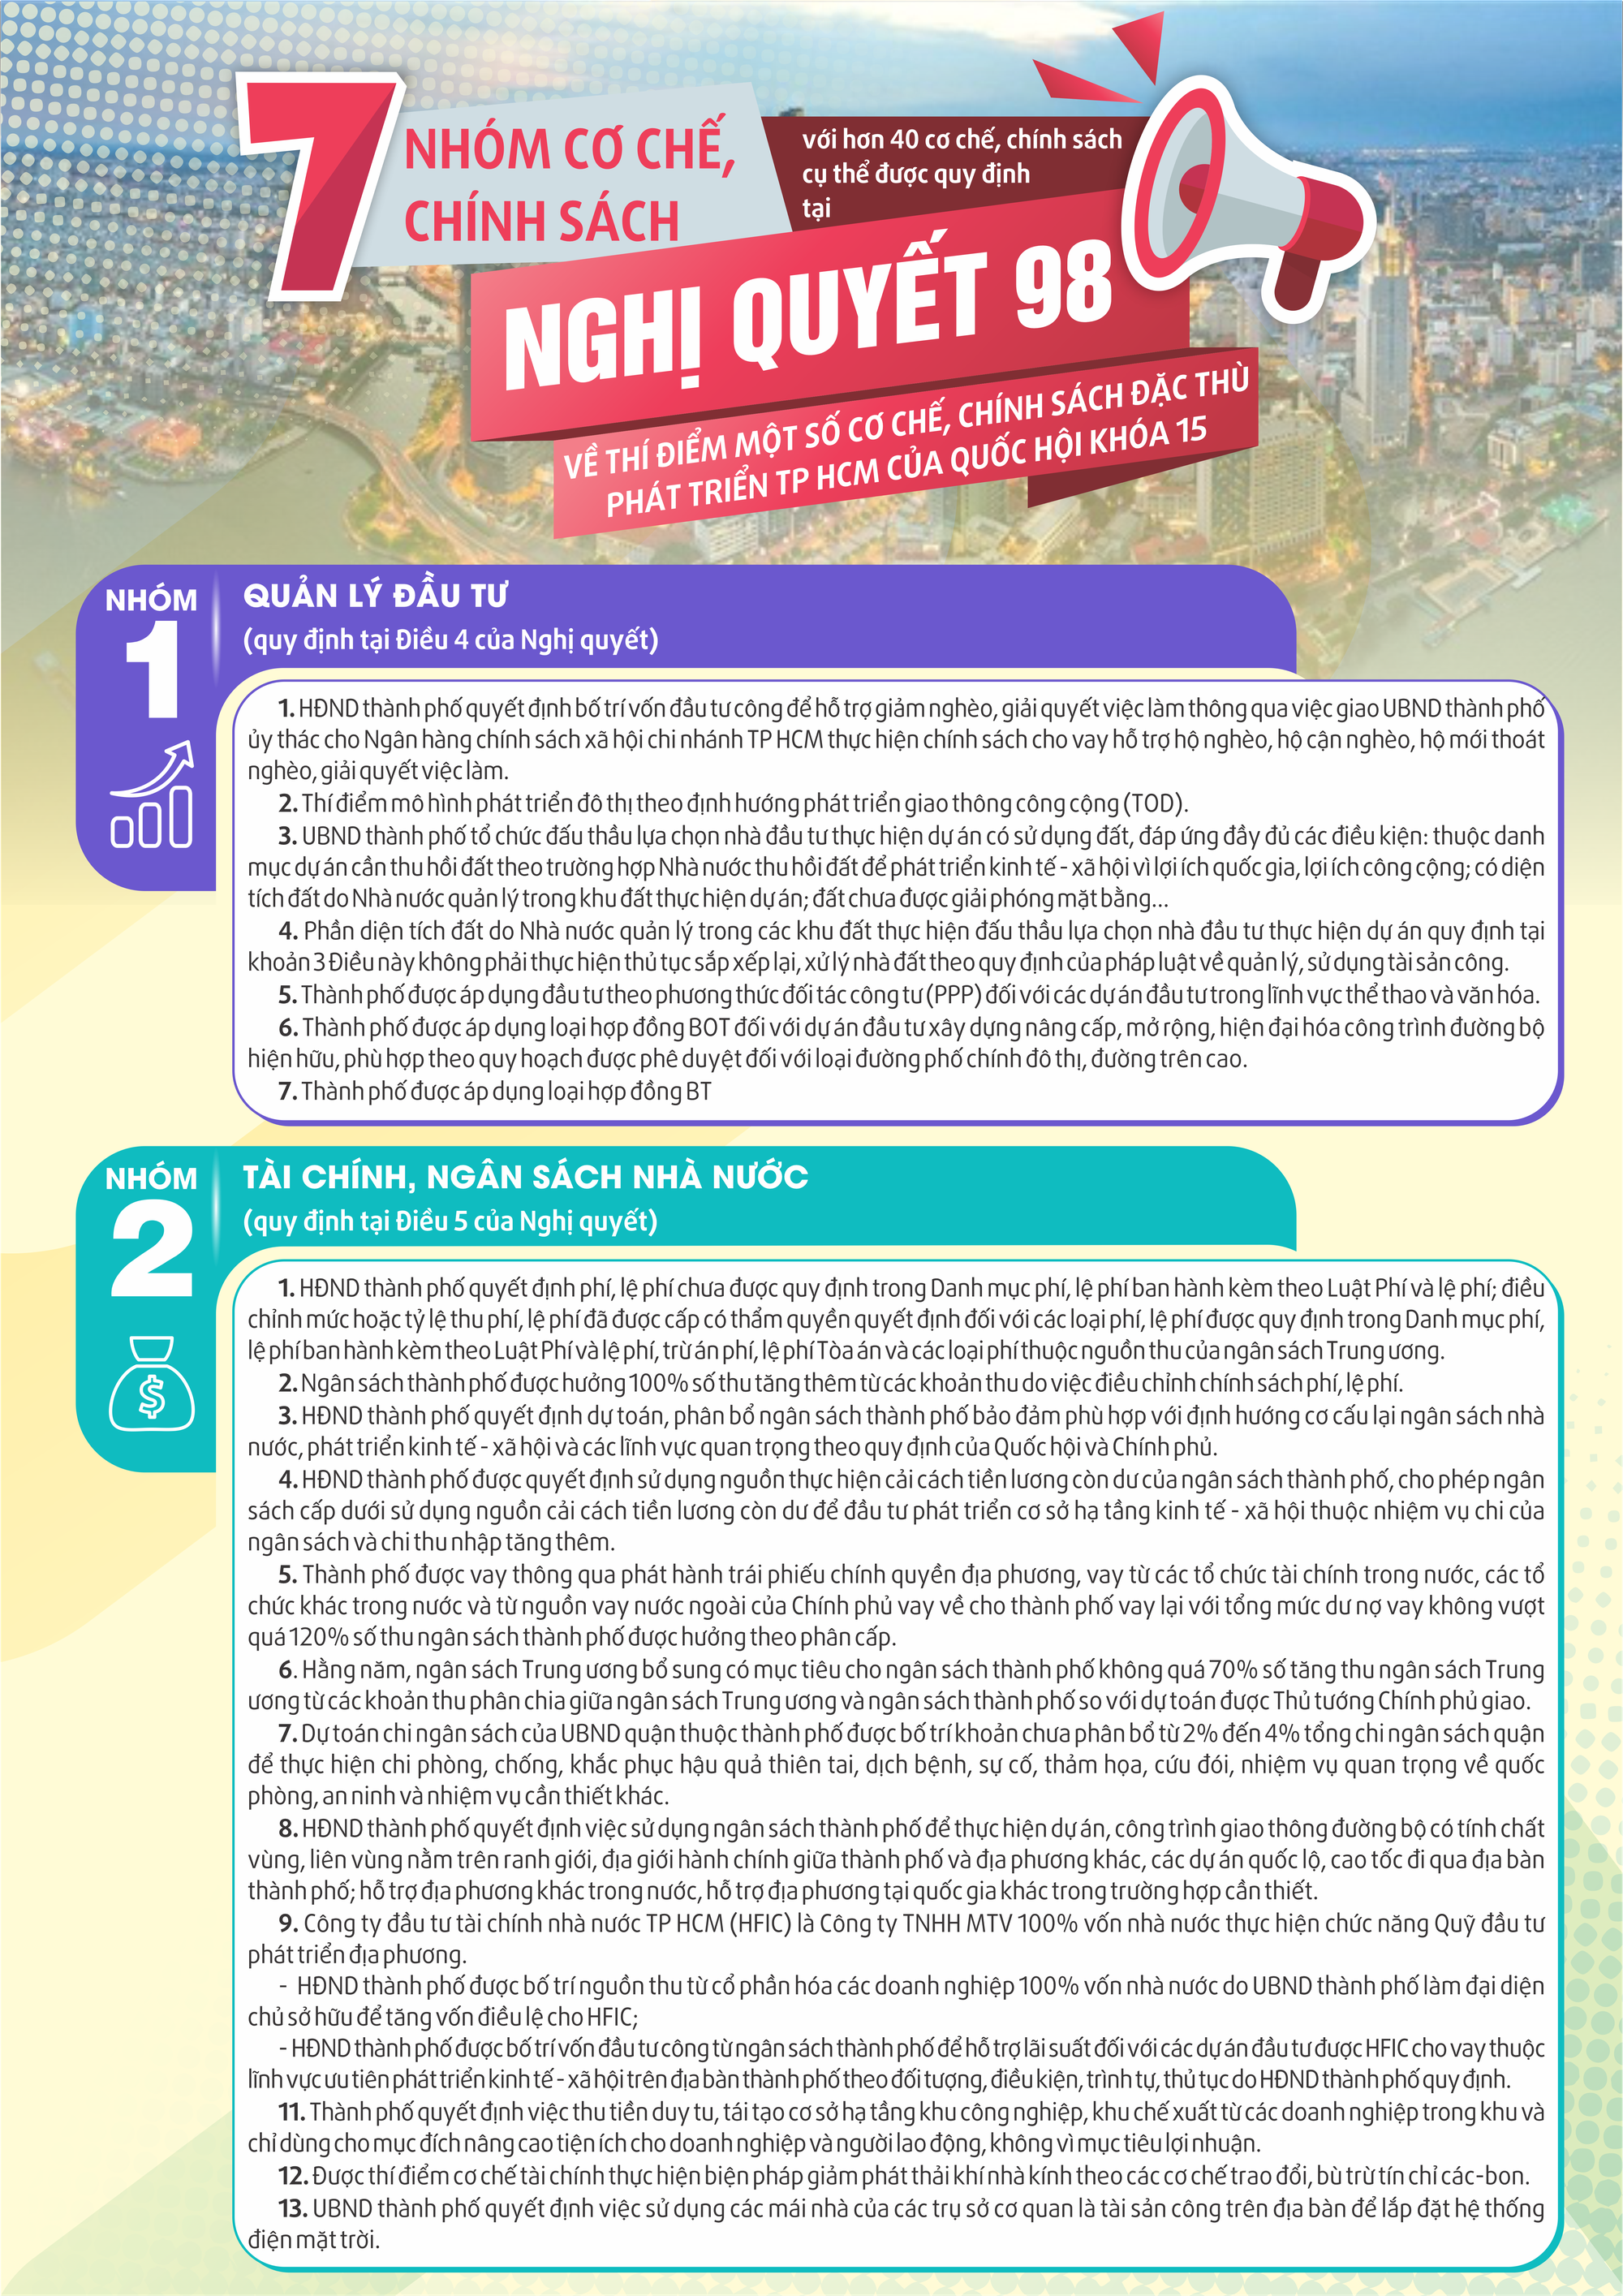 Infographic: “Cẩm nang” với 7 nhóm cơ chế, chính sách thí điểm phát triển TP HCM - Ảnh 1.